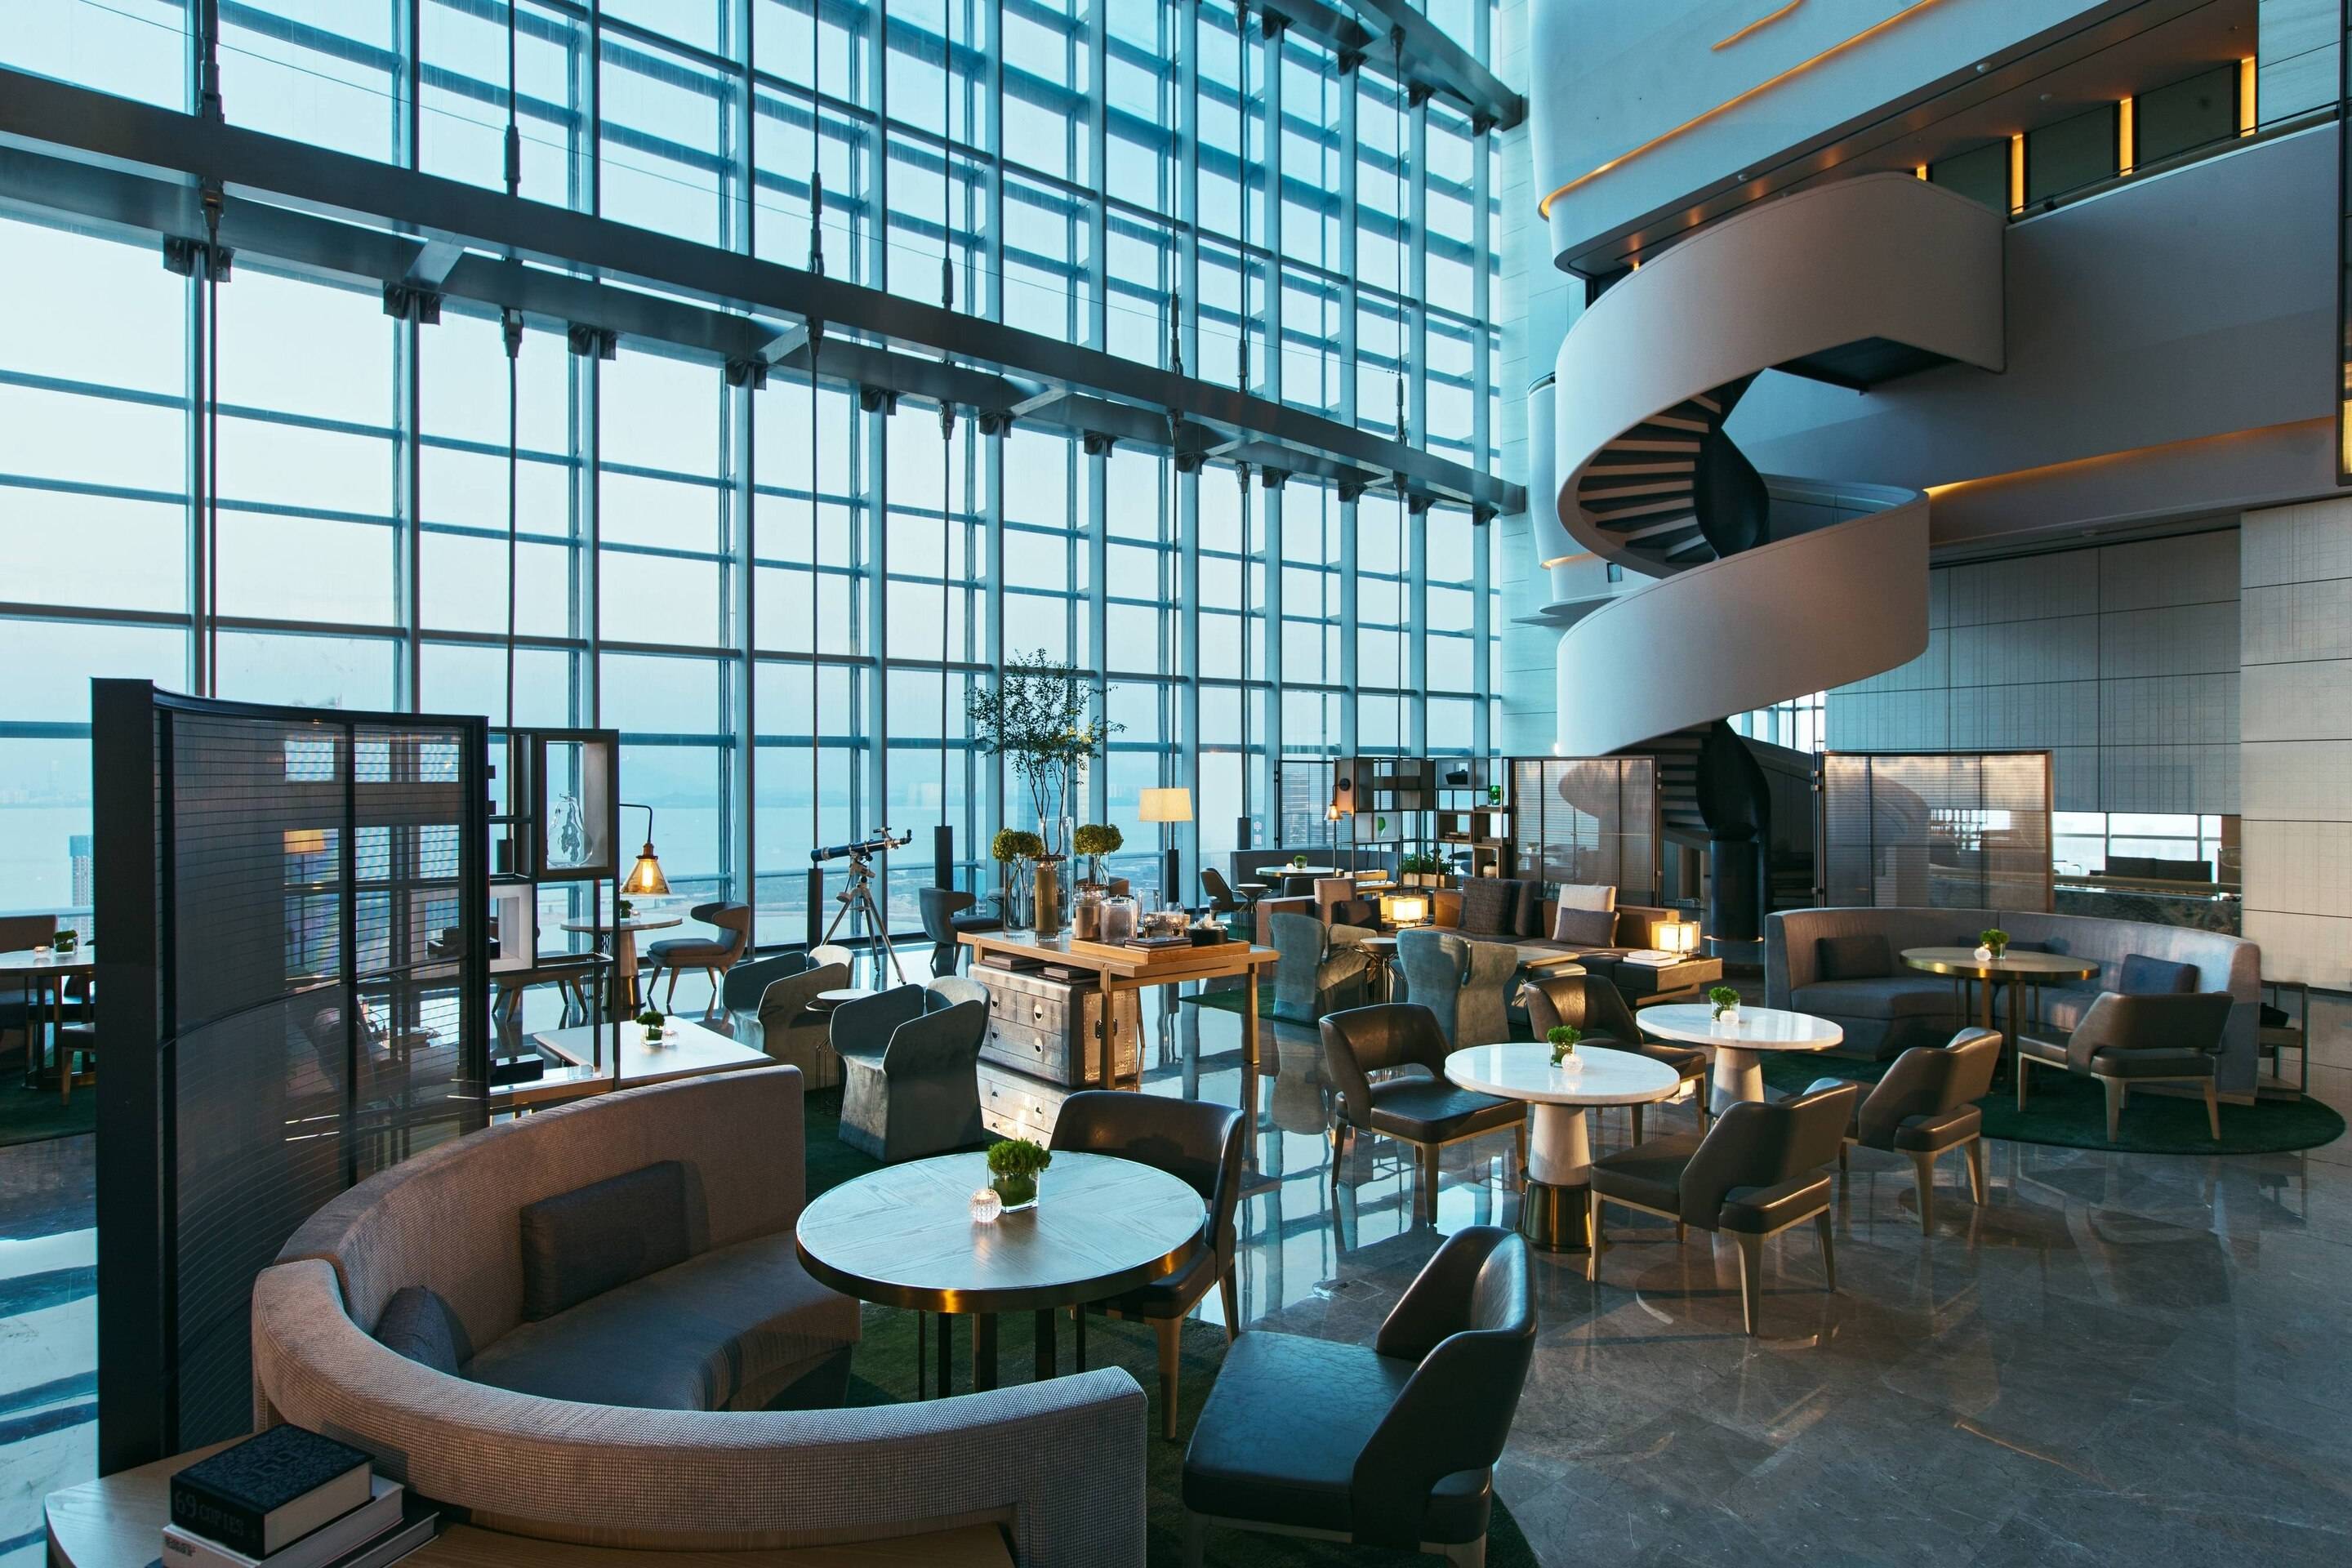 上海上海宝华万豪酒店 (Shanghai Marriott Hotel Parkview) - Agoda 网上最低价格保证，即时订房服务